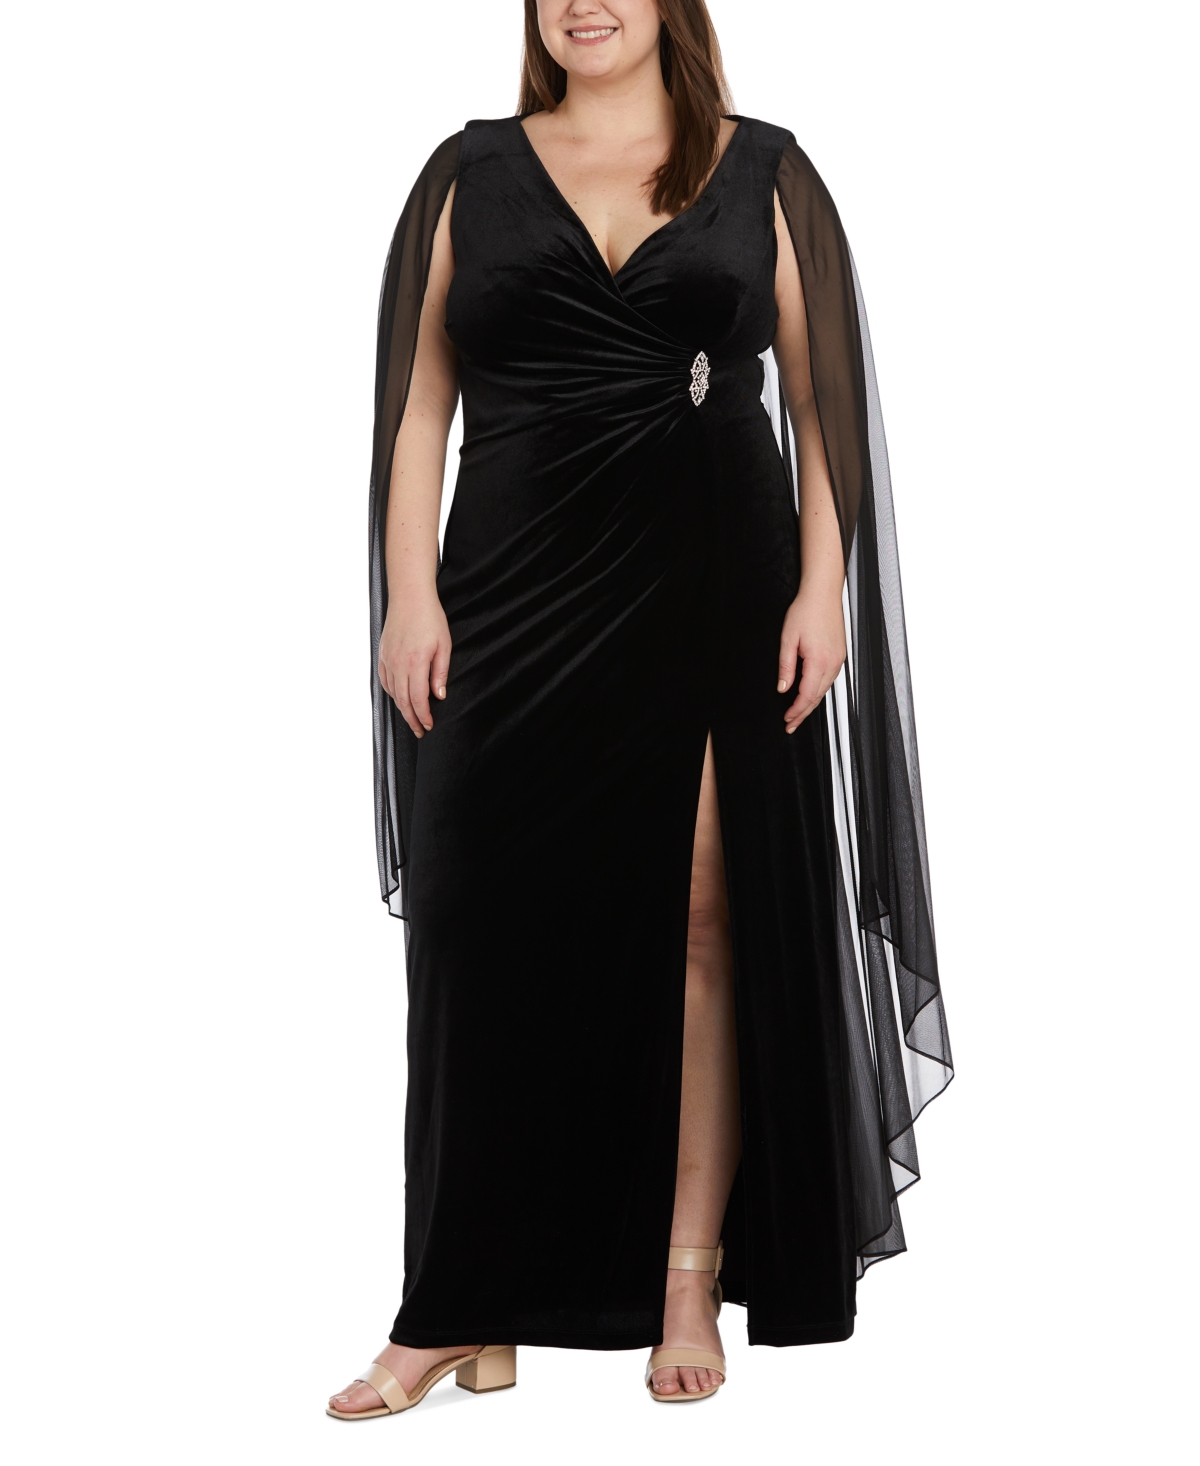 1930s Plus Size Dresses | Art Deco Plus Size Dresses R  M Richards Plus Size Draped-Shoulder Side-Ruched Gown - Black $129.00 AT vintagedancer.com